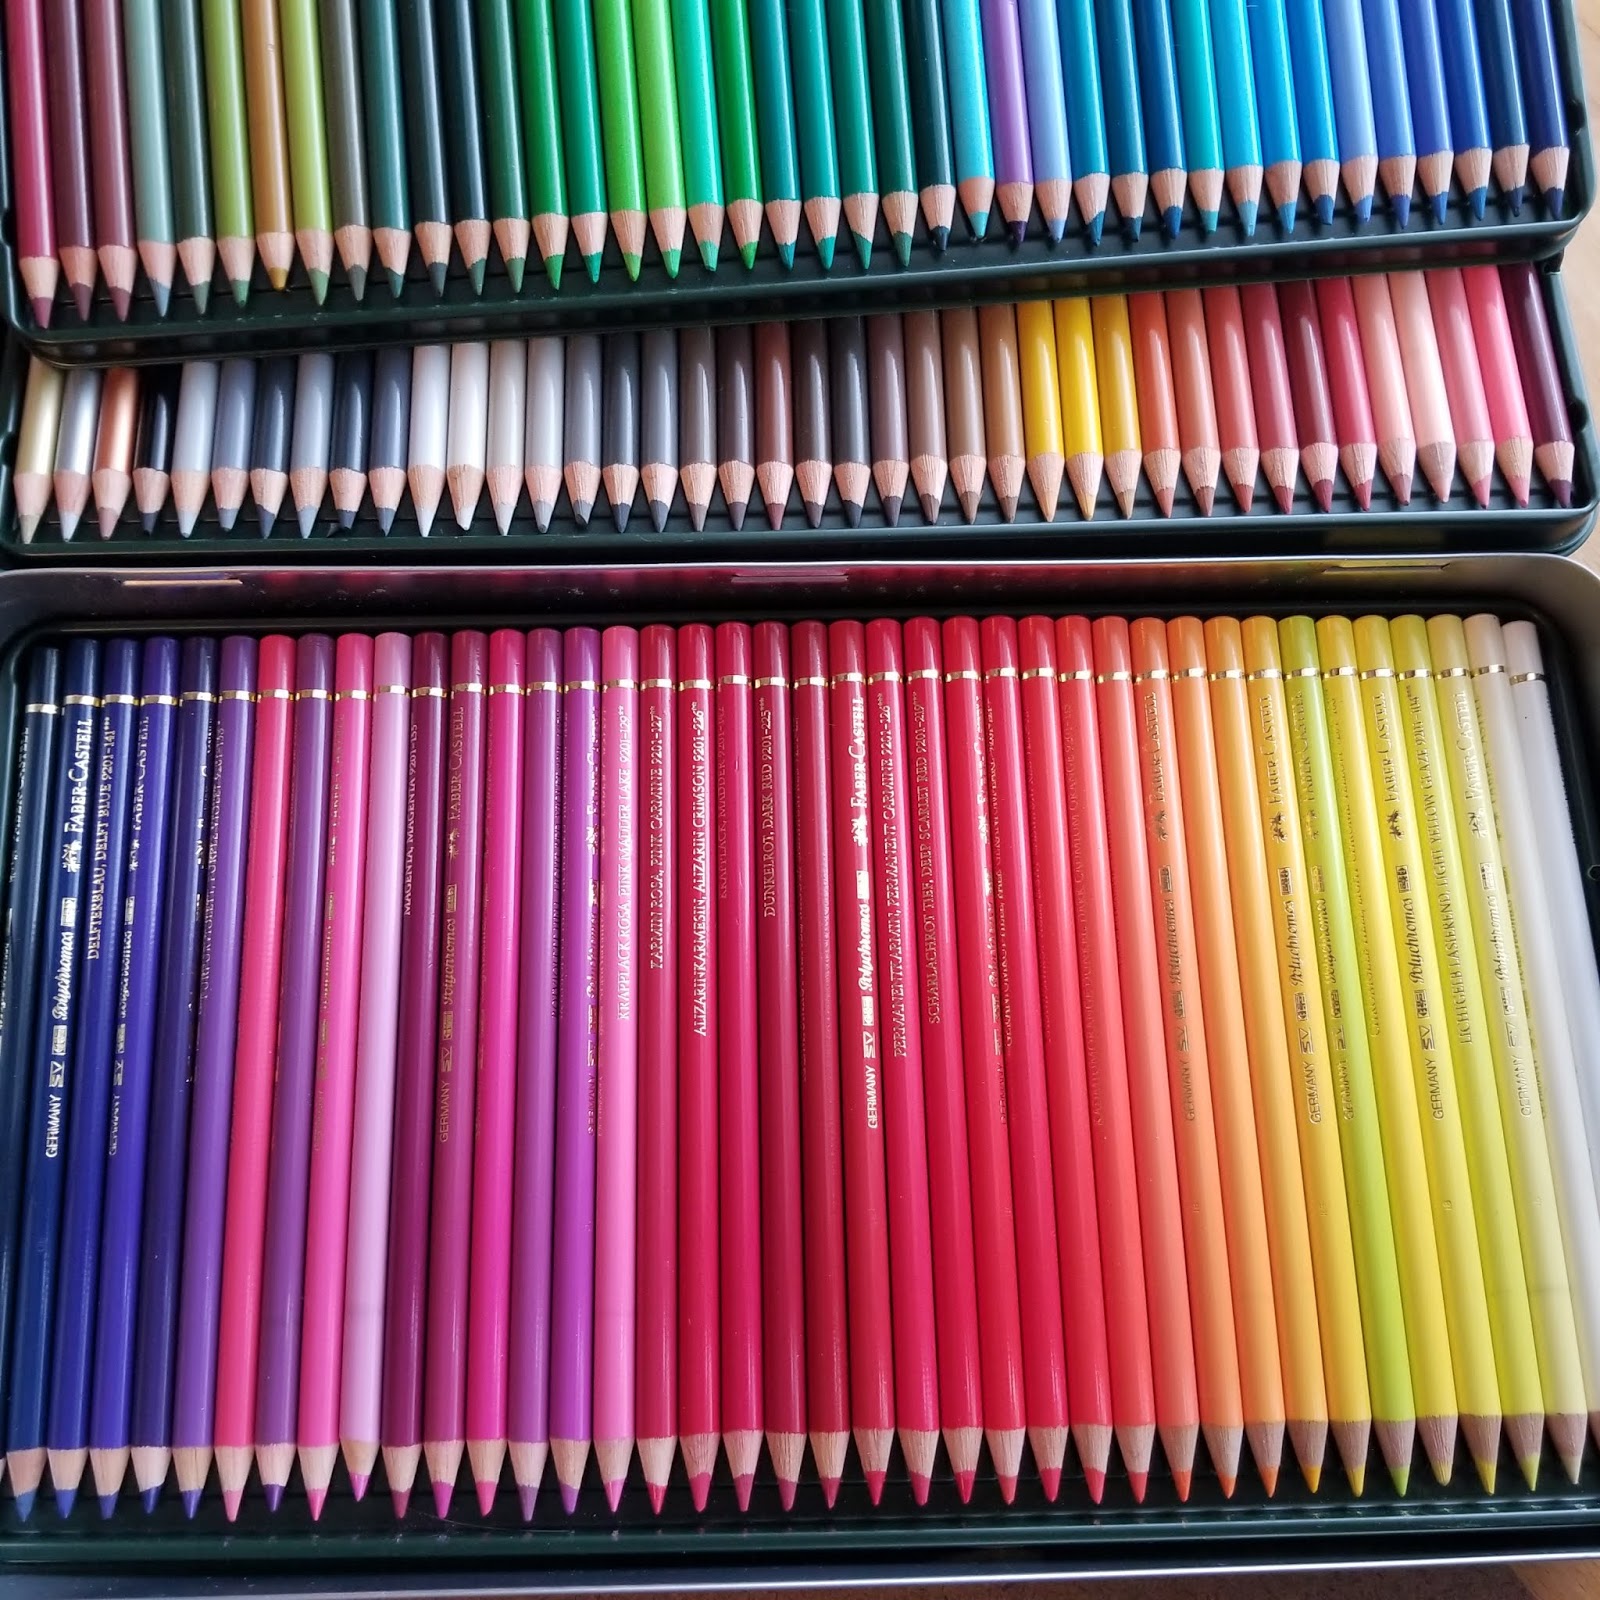 Faber-Castel Polychromos Colored Pencils VS. Crayola Watercolor